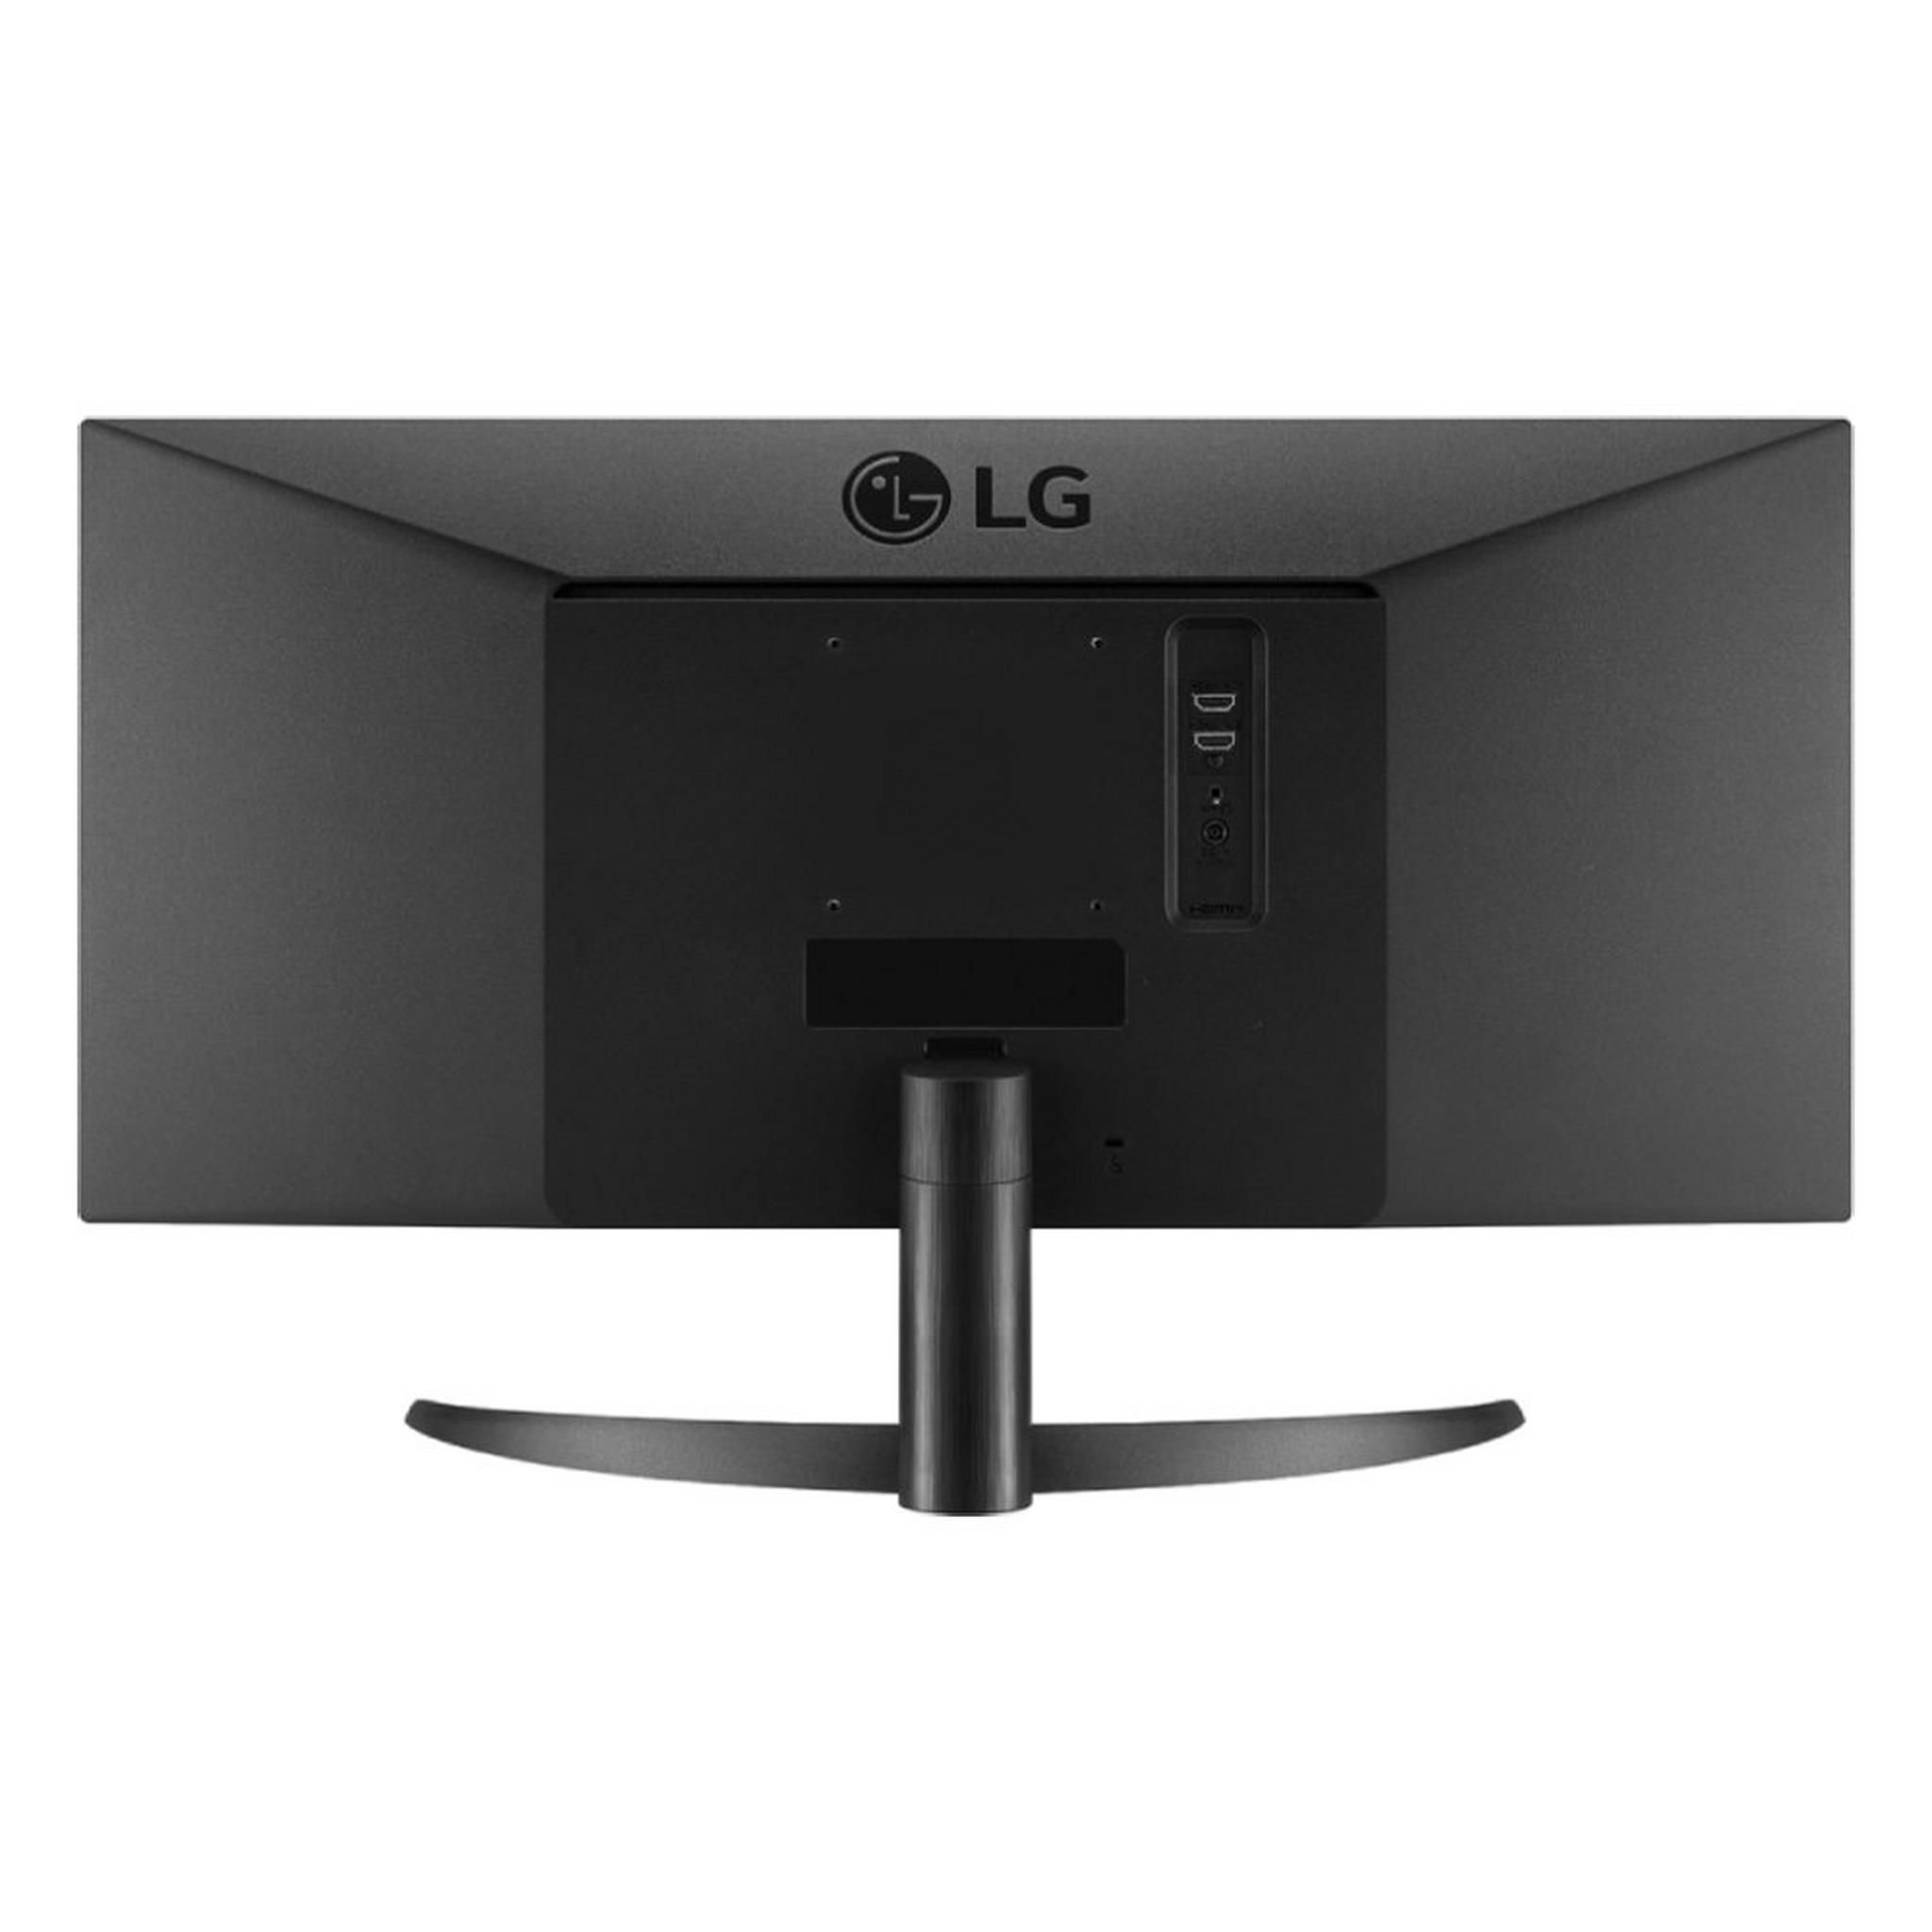 LG UltraWide FHD 29-inch Monitor